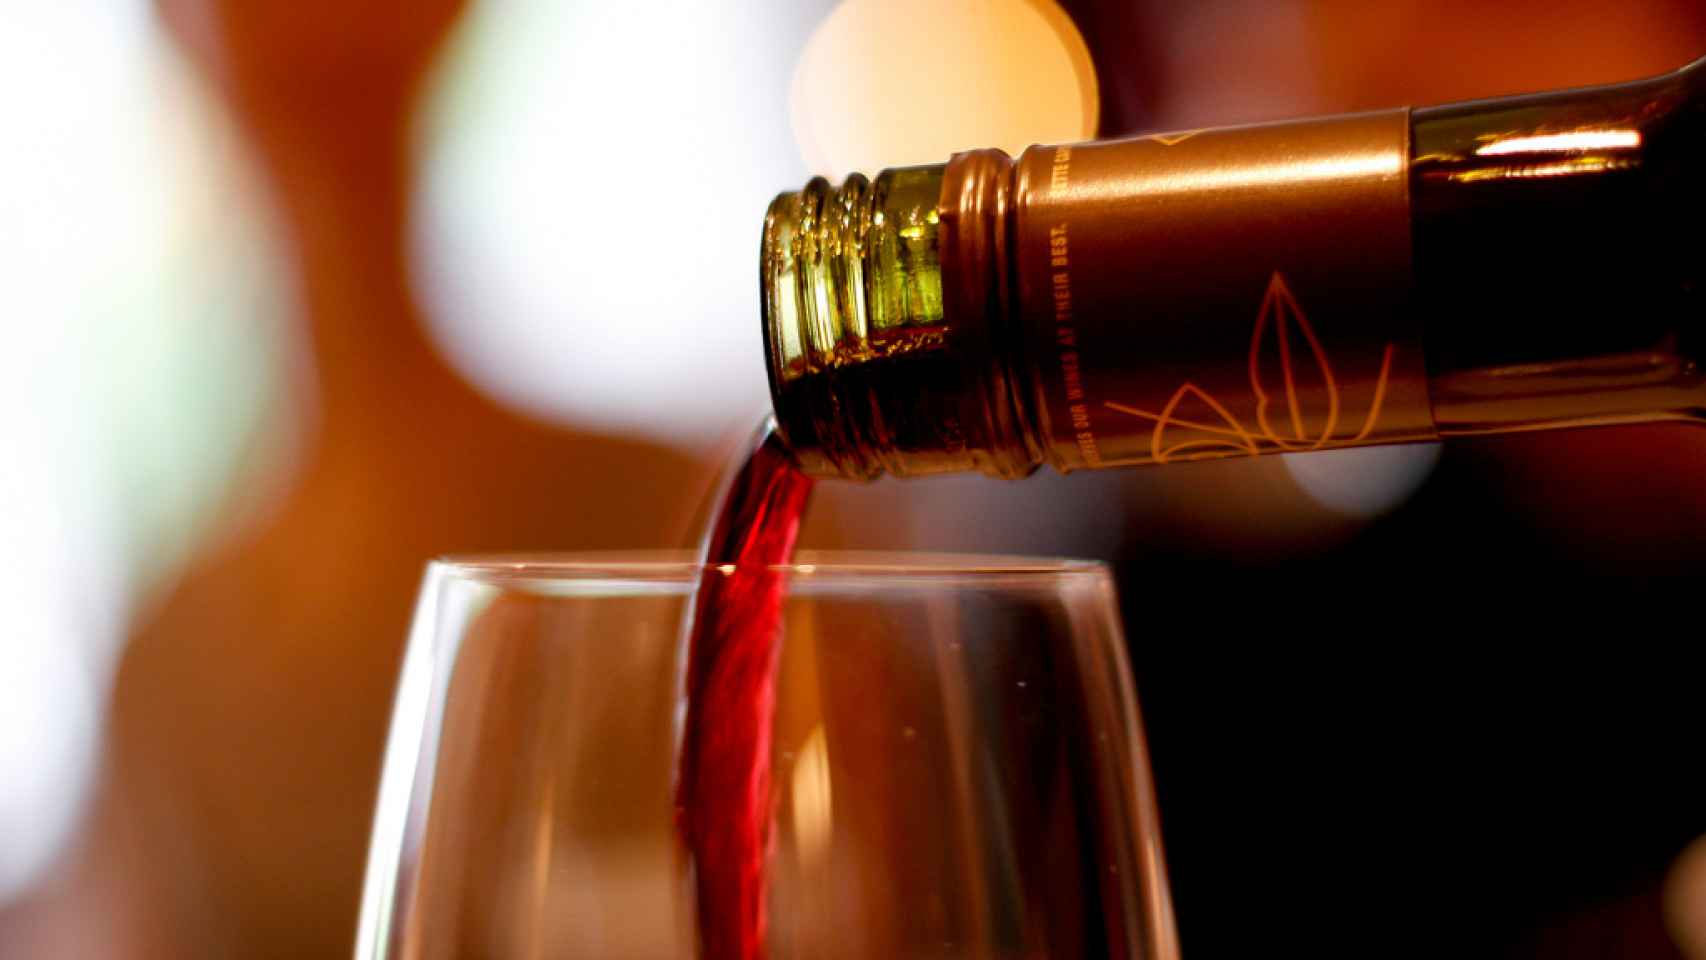 Recientes investigaciones han demostrado que una copa de vino es tan buena como se creía